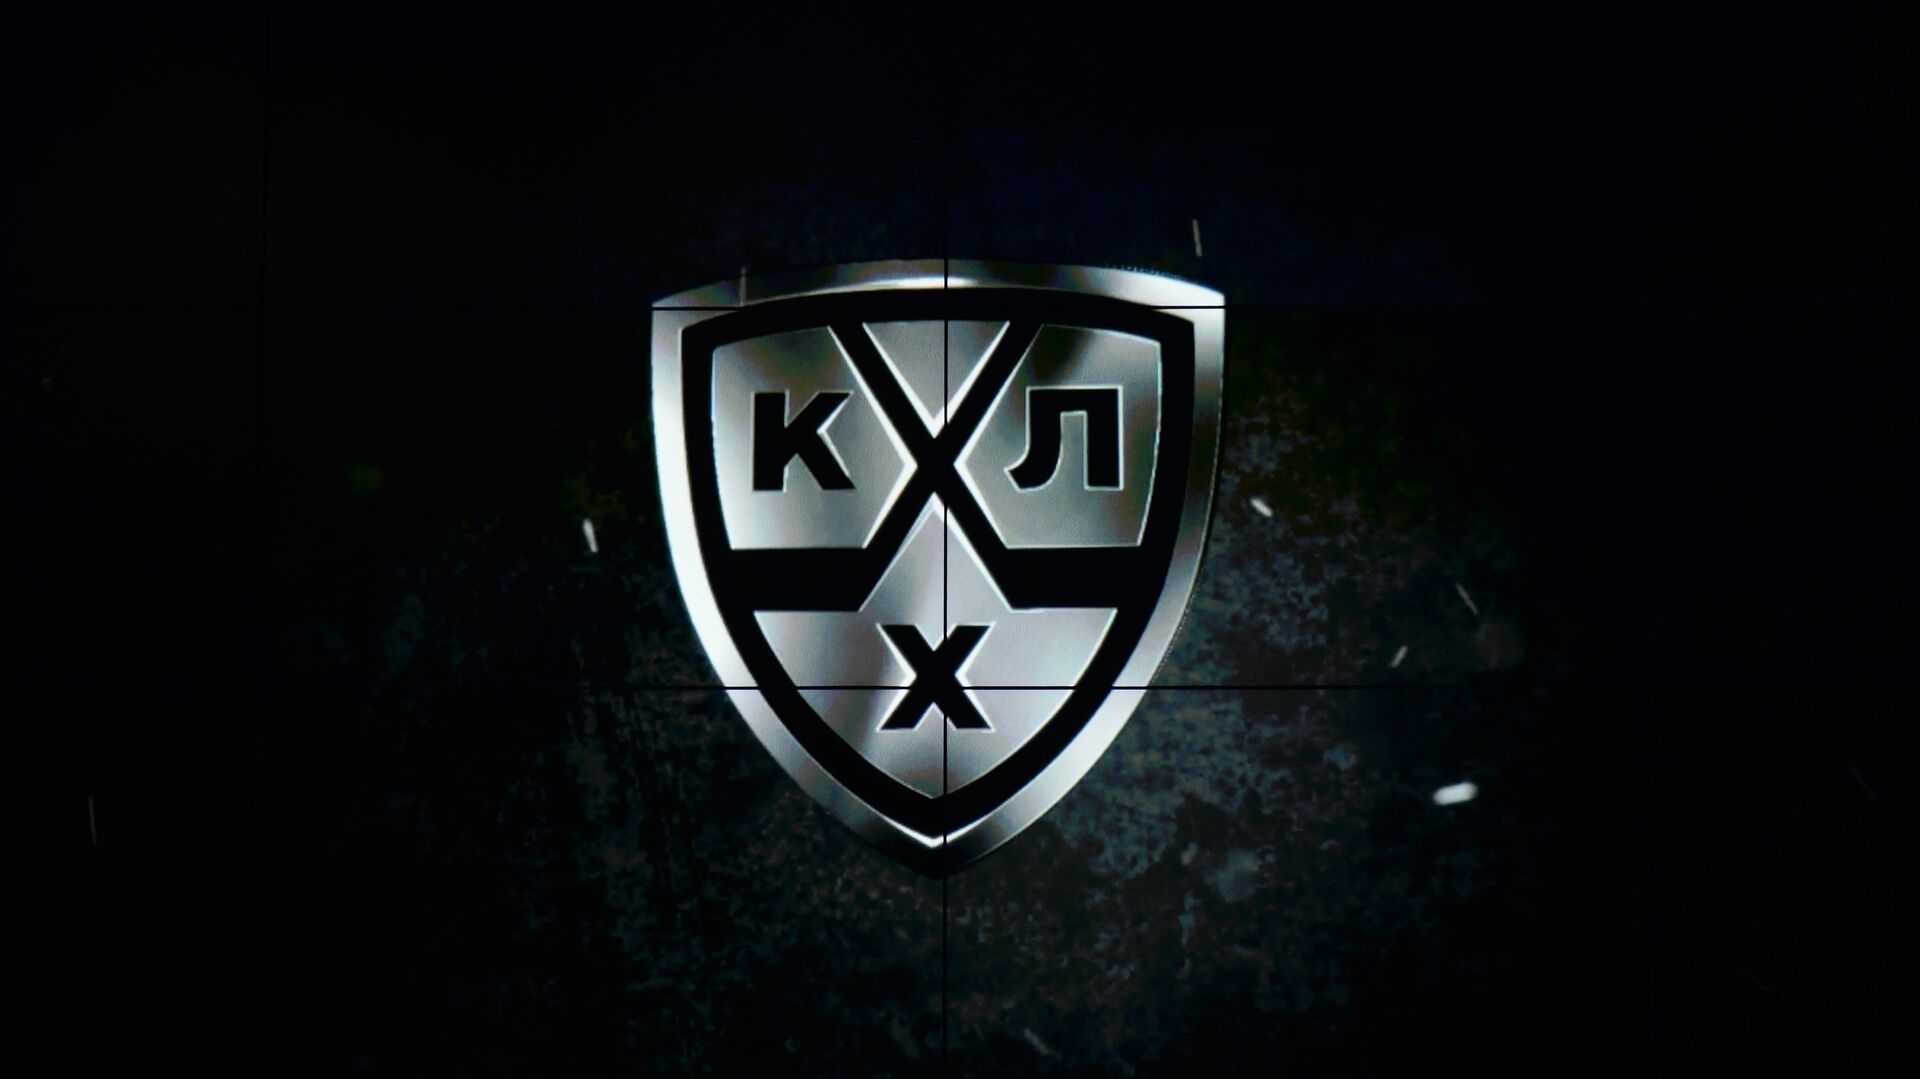 Логотип Континентальной хоккейной лиги (КХЛ) - РИА Новости, 1920, 03.03.2021